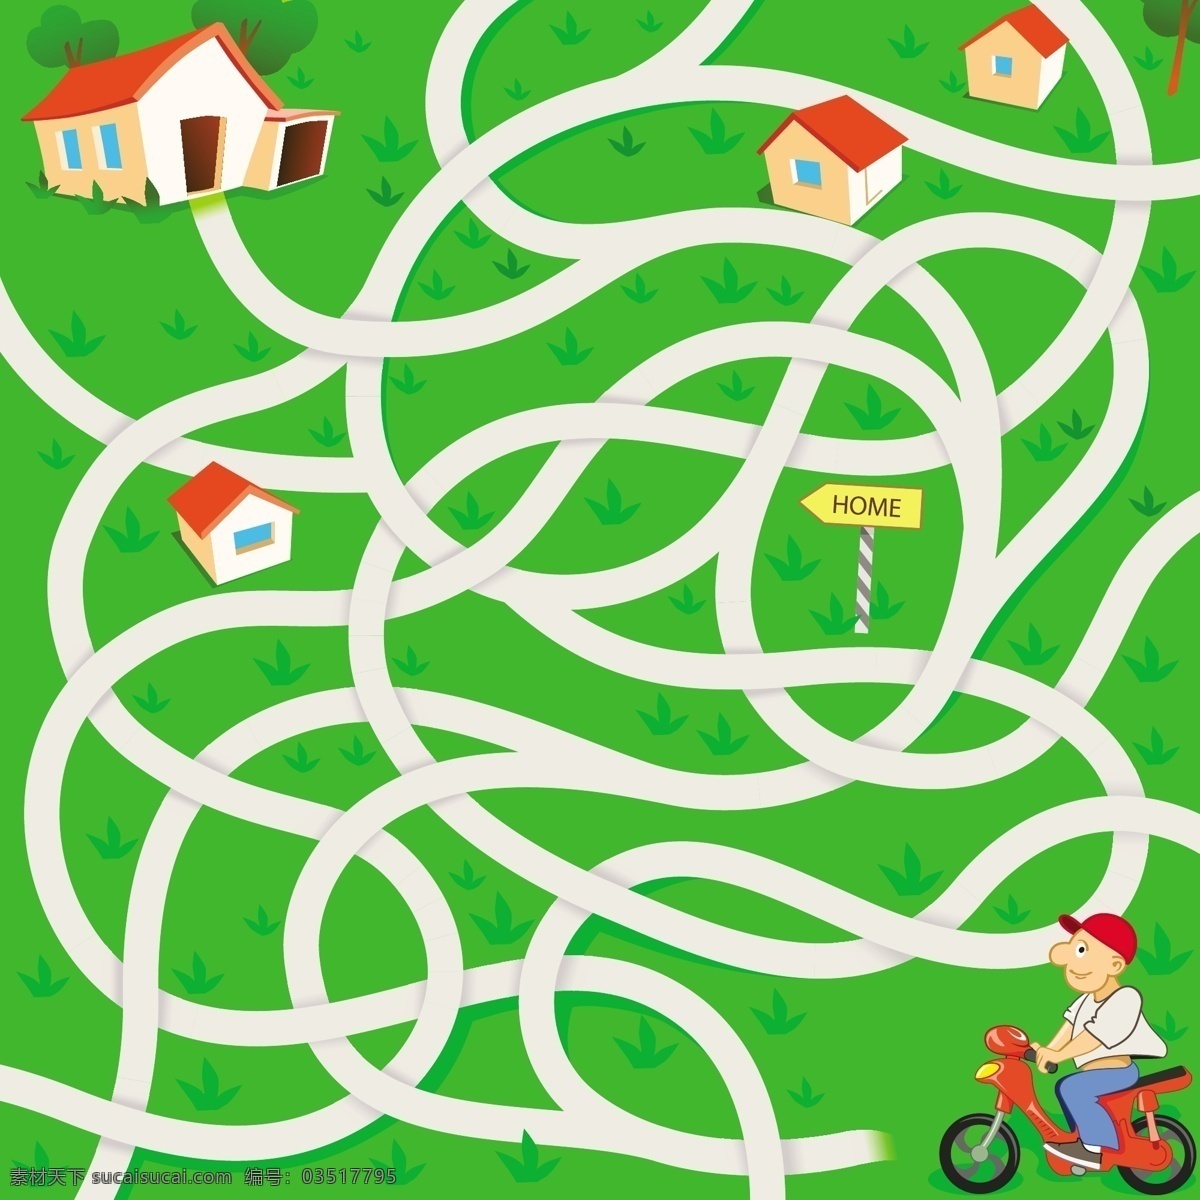 卡通 道路 迷宫 模板下载 房子 草地 摩托车 外送 外卖 人物 乡村 生活百科 矢量素材 绿色